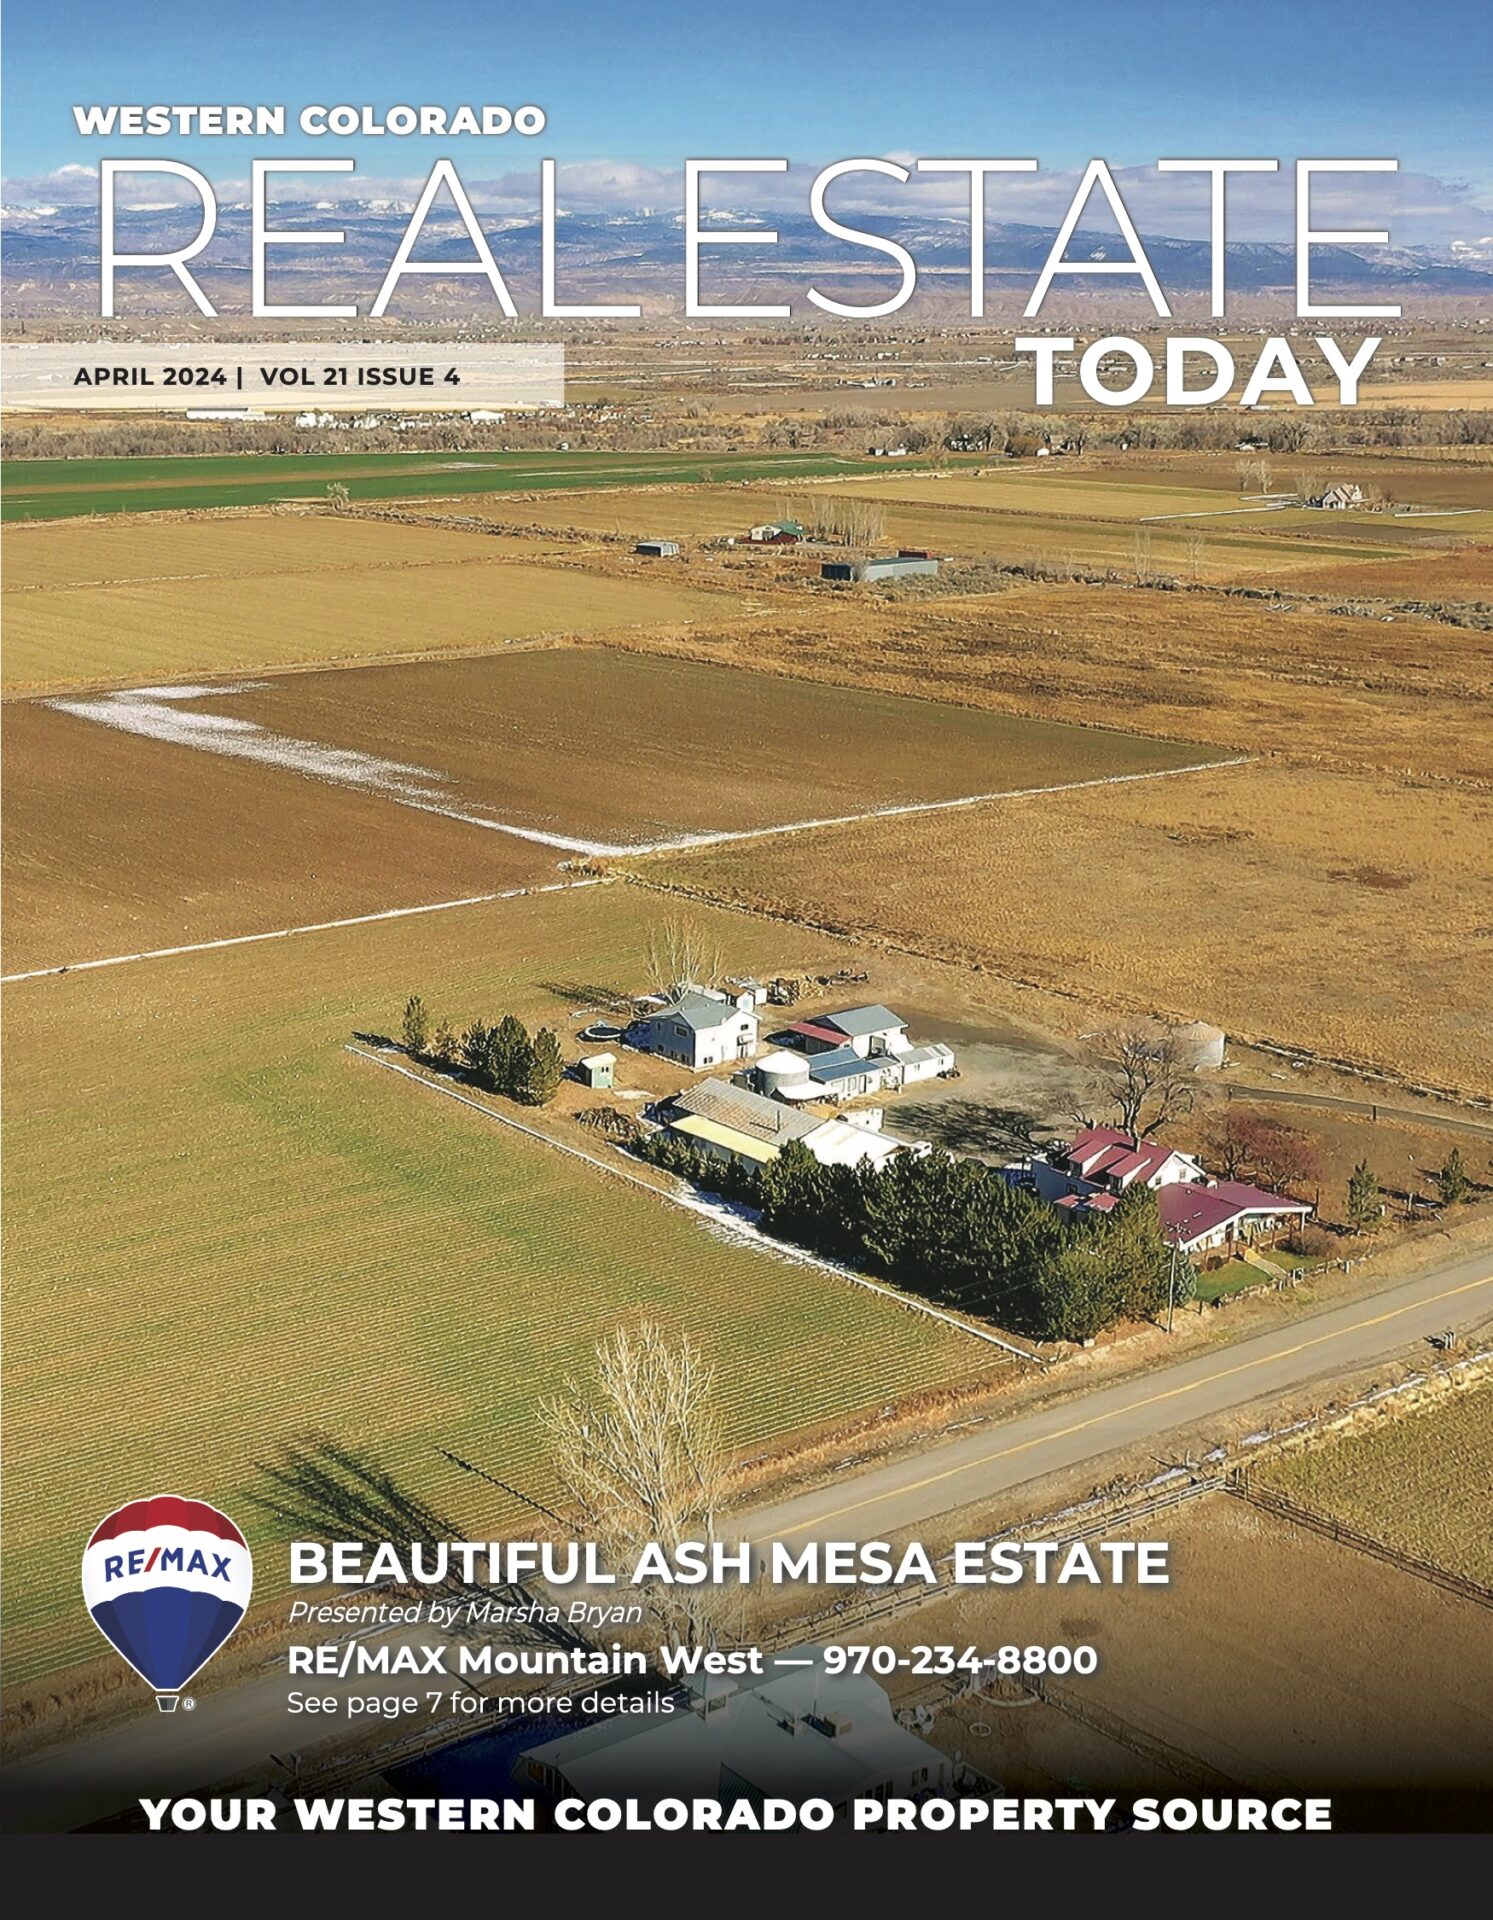 April 2024 Western Colorado Real Estate Today